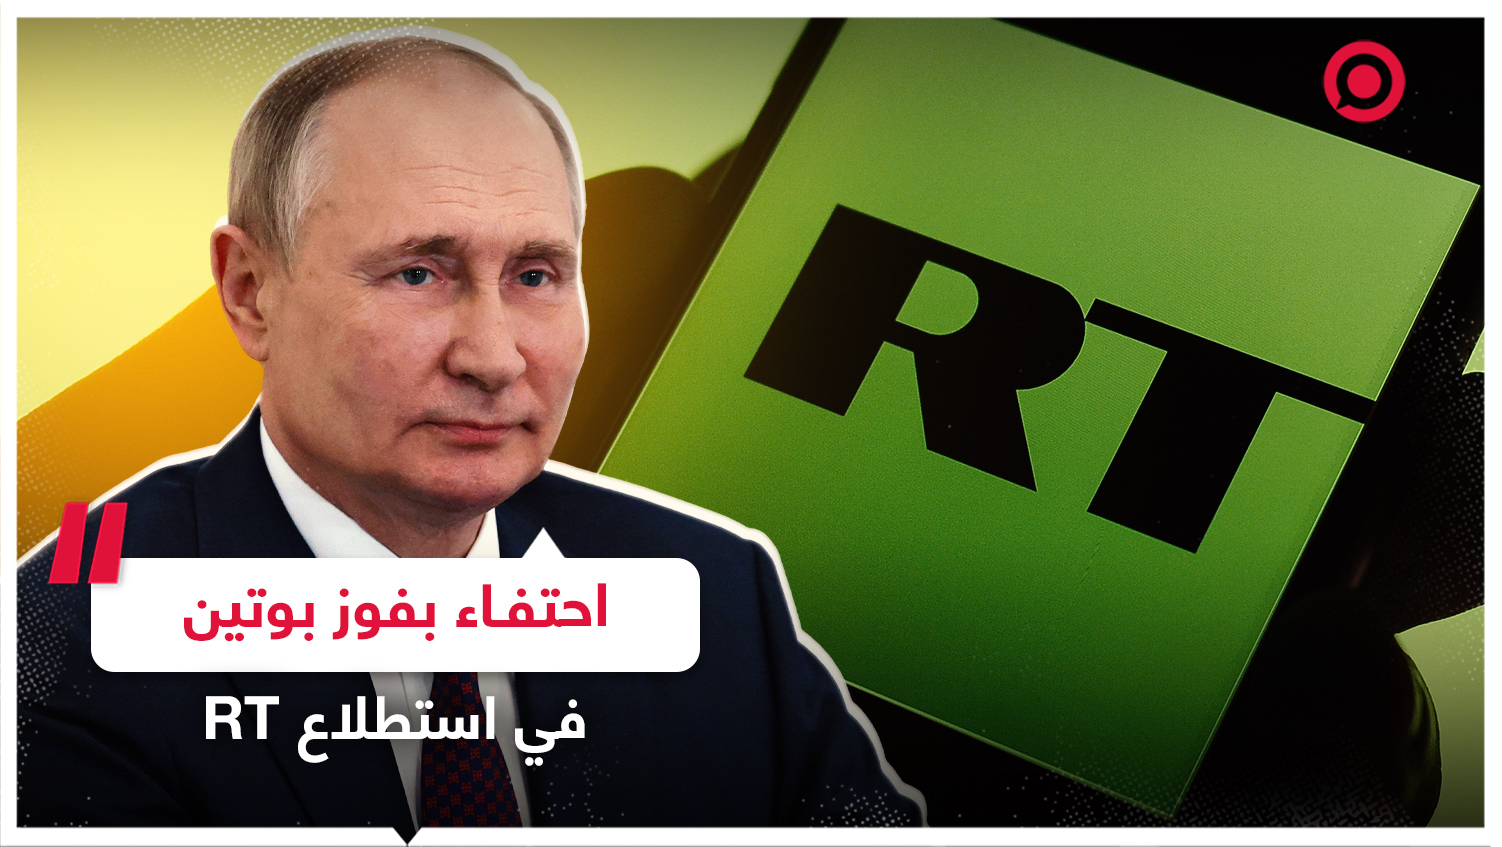 العالم العربي يحتفي بفوز بوتين في استطلاع RT